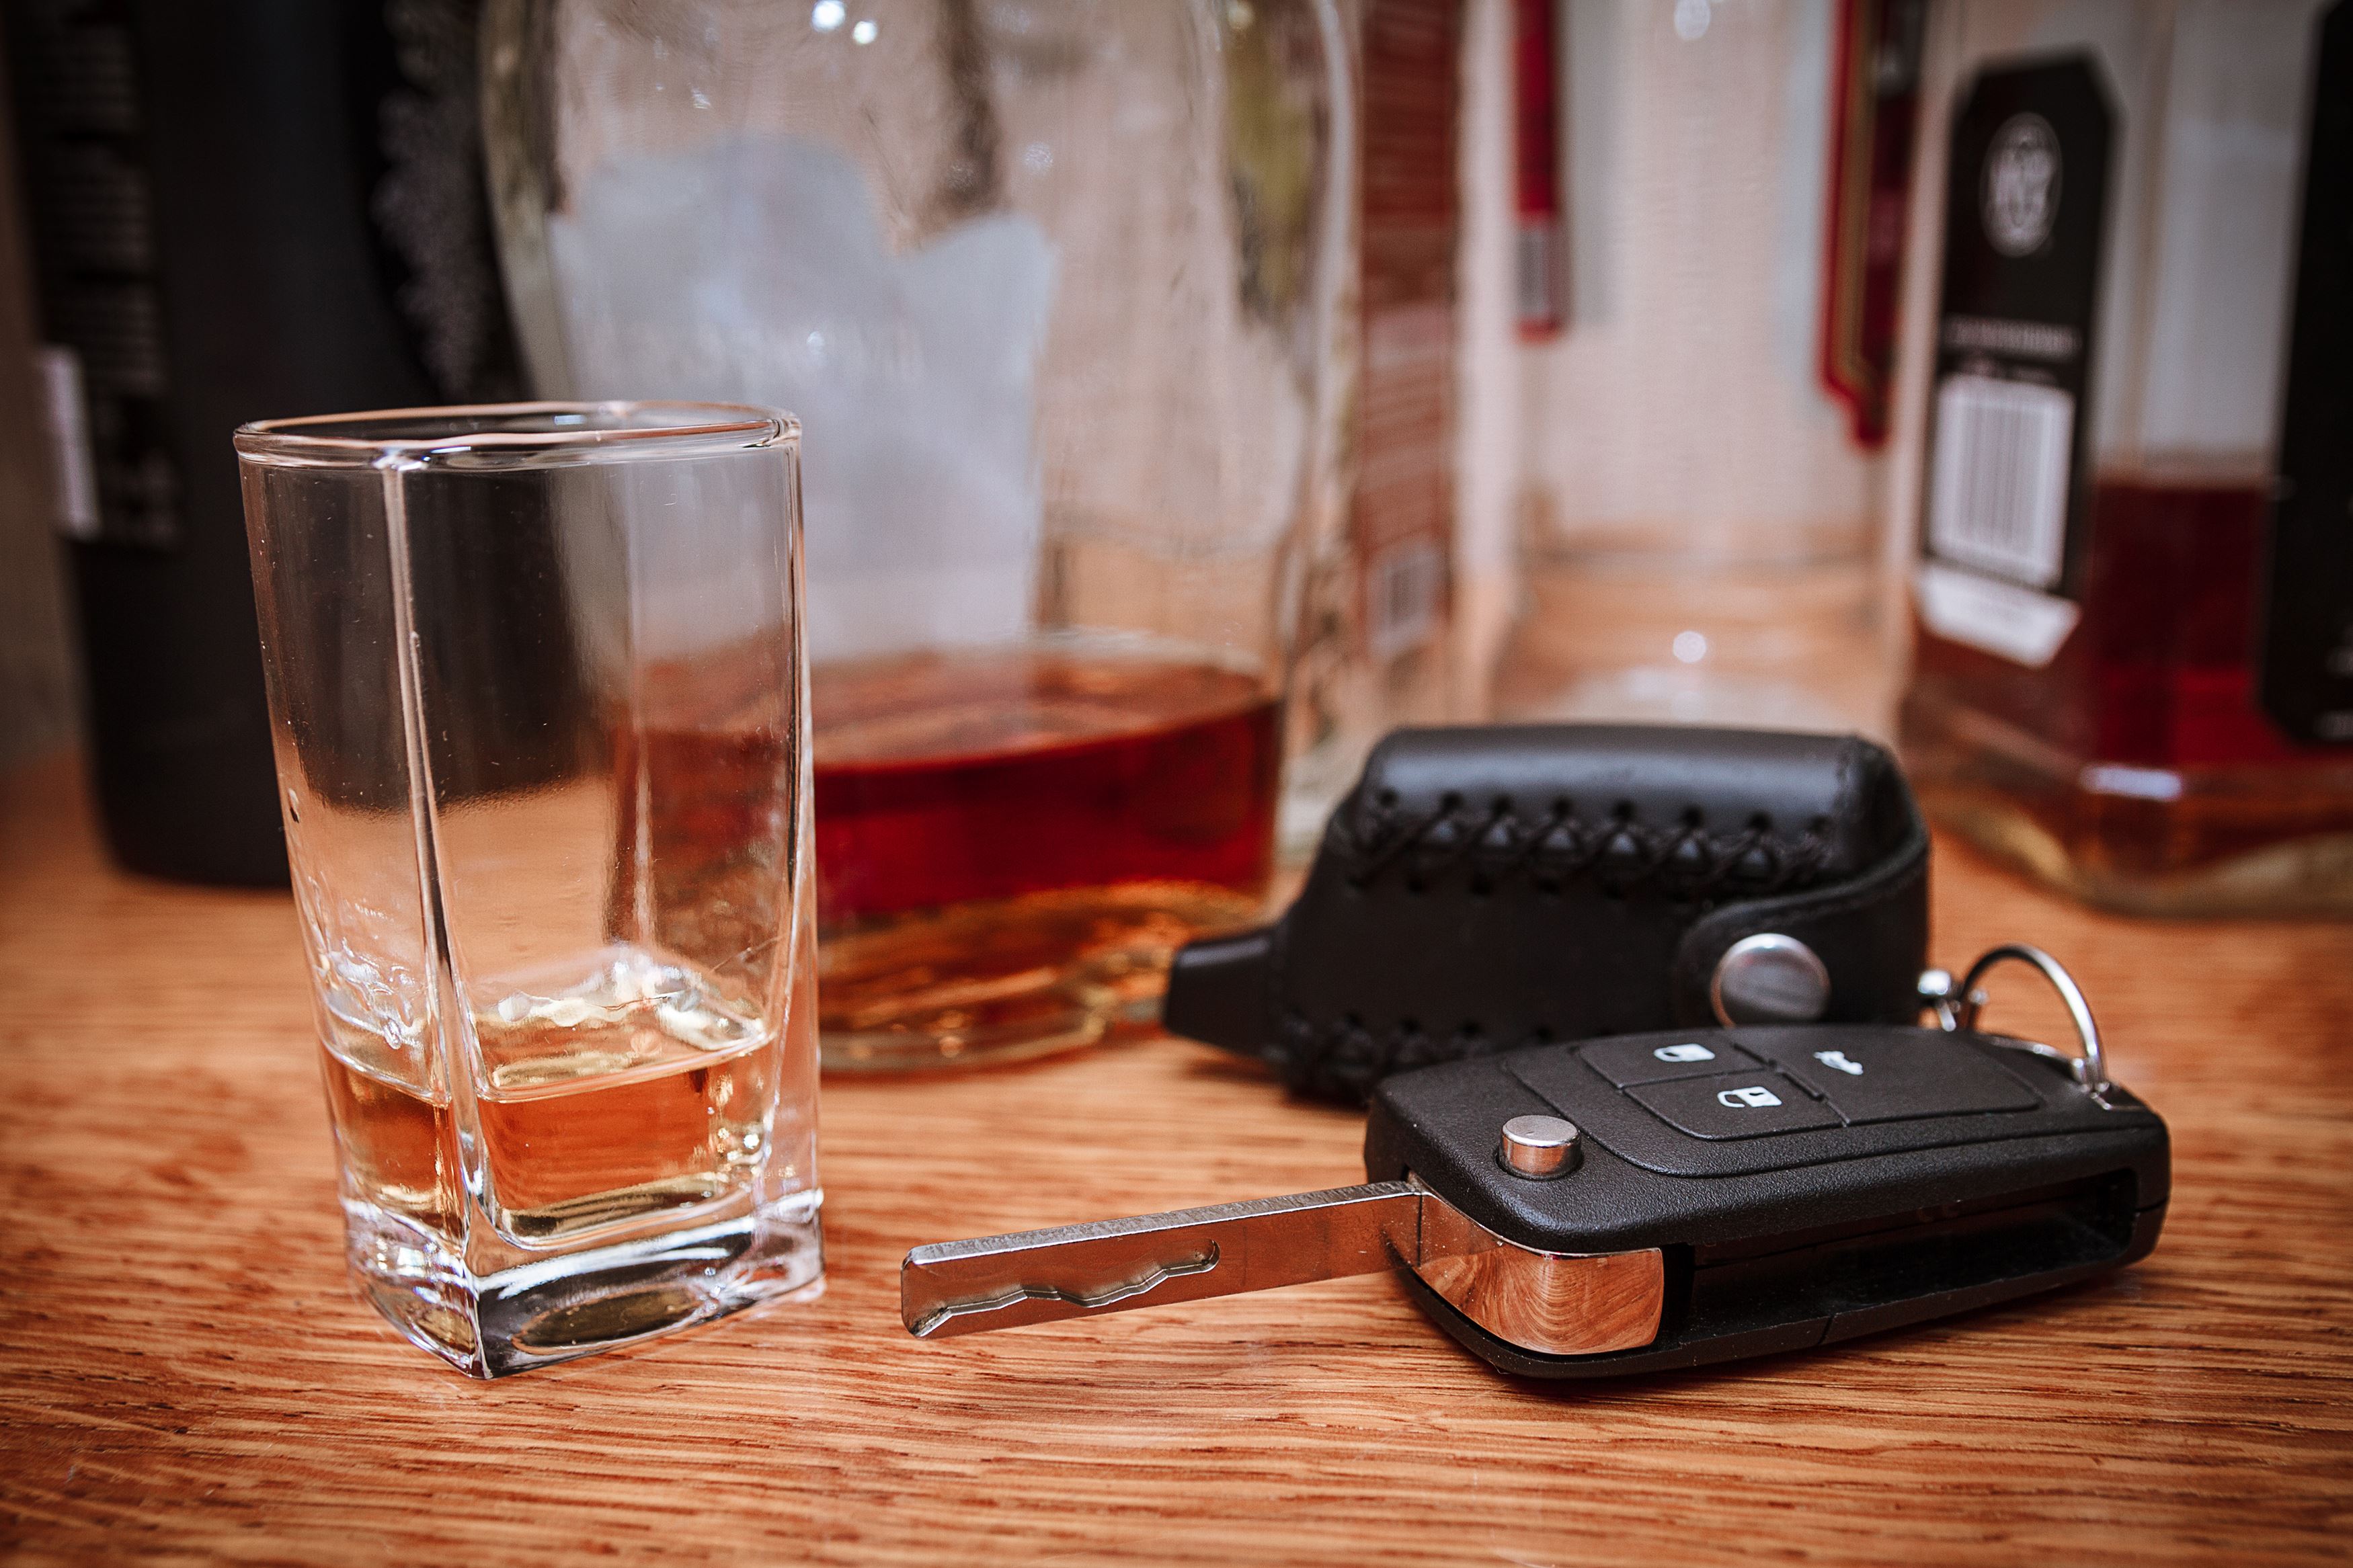 Alcohol and car keys - MA OUI Penalties